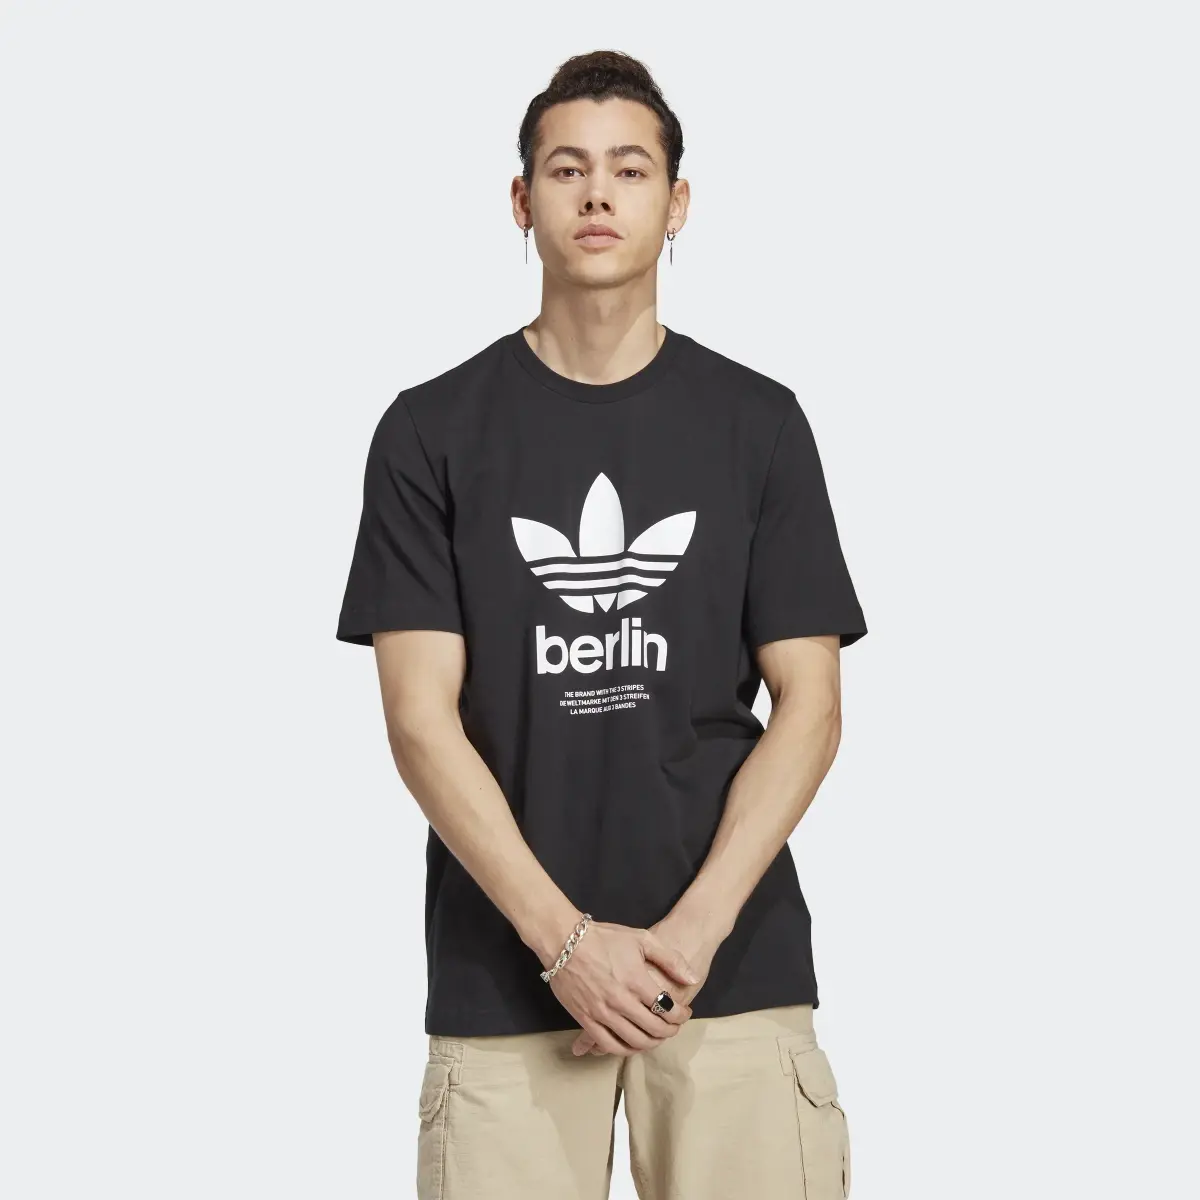 Adidas T-shirt Icone Berlin City Originals. 2